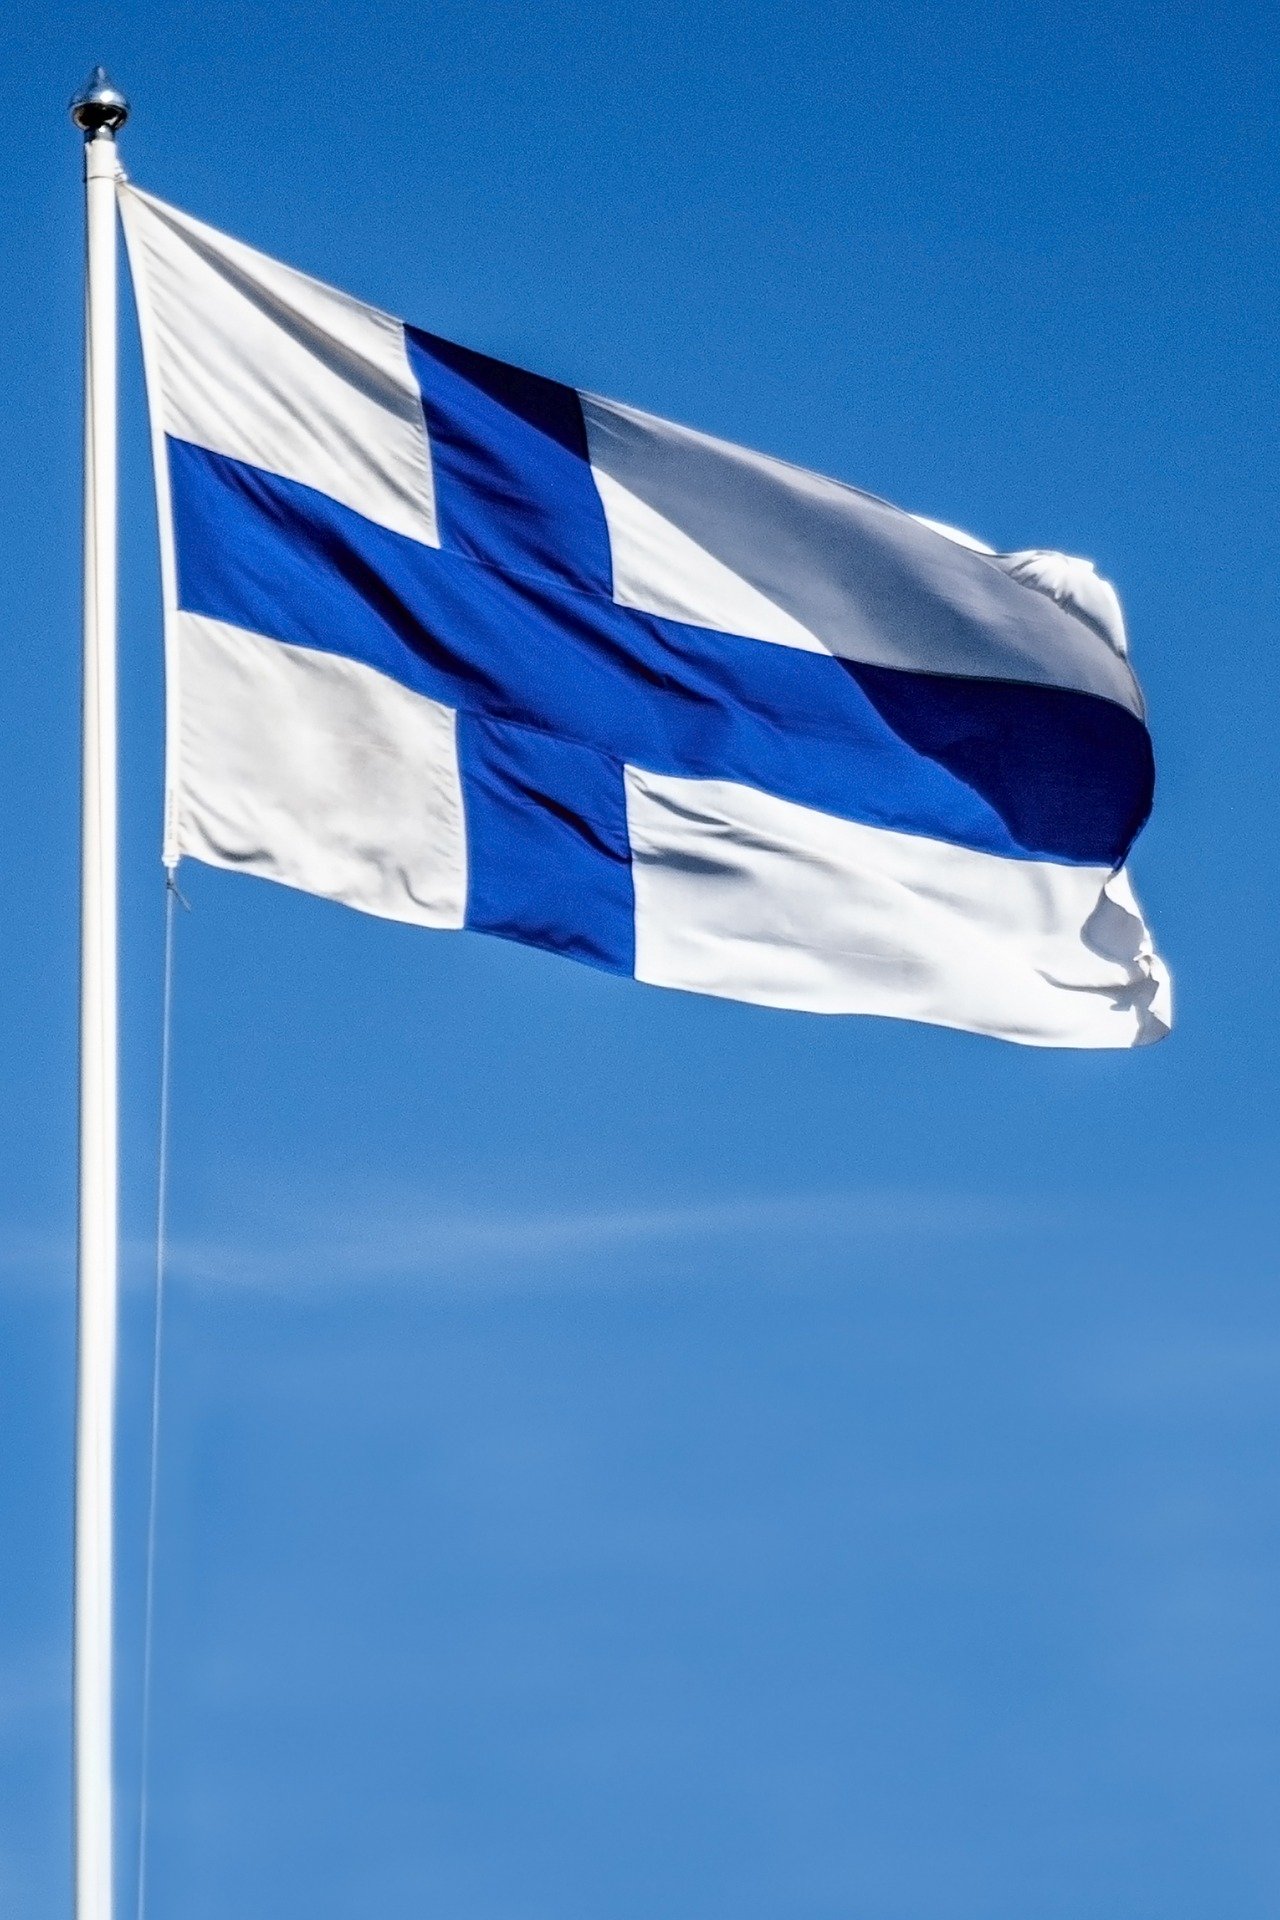 Suomen lippu liehuu tangossa.